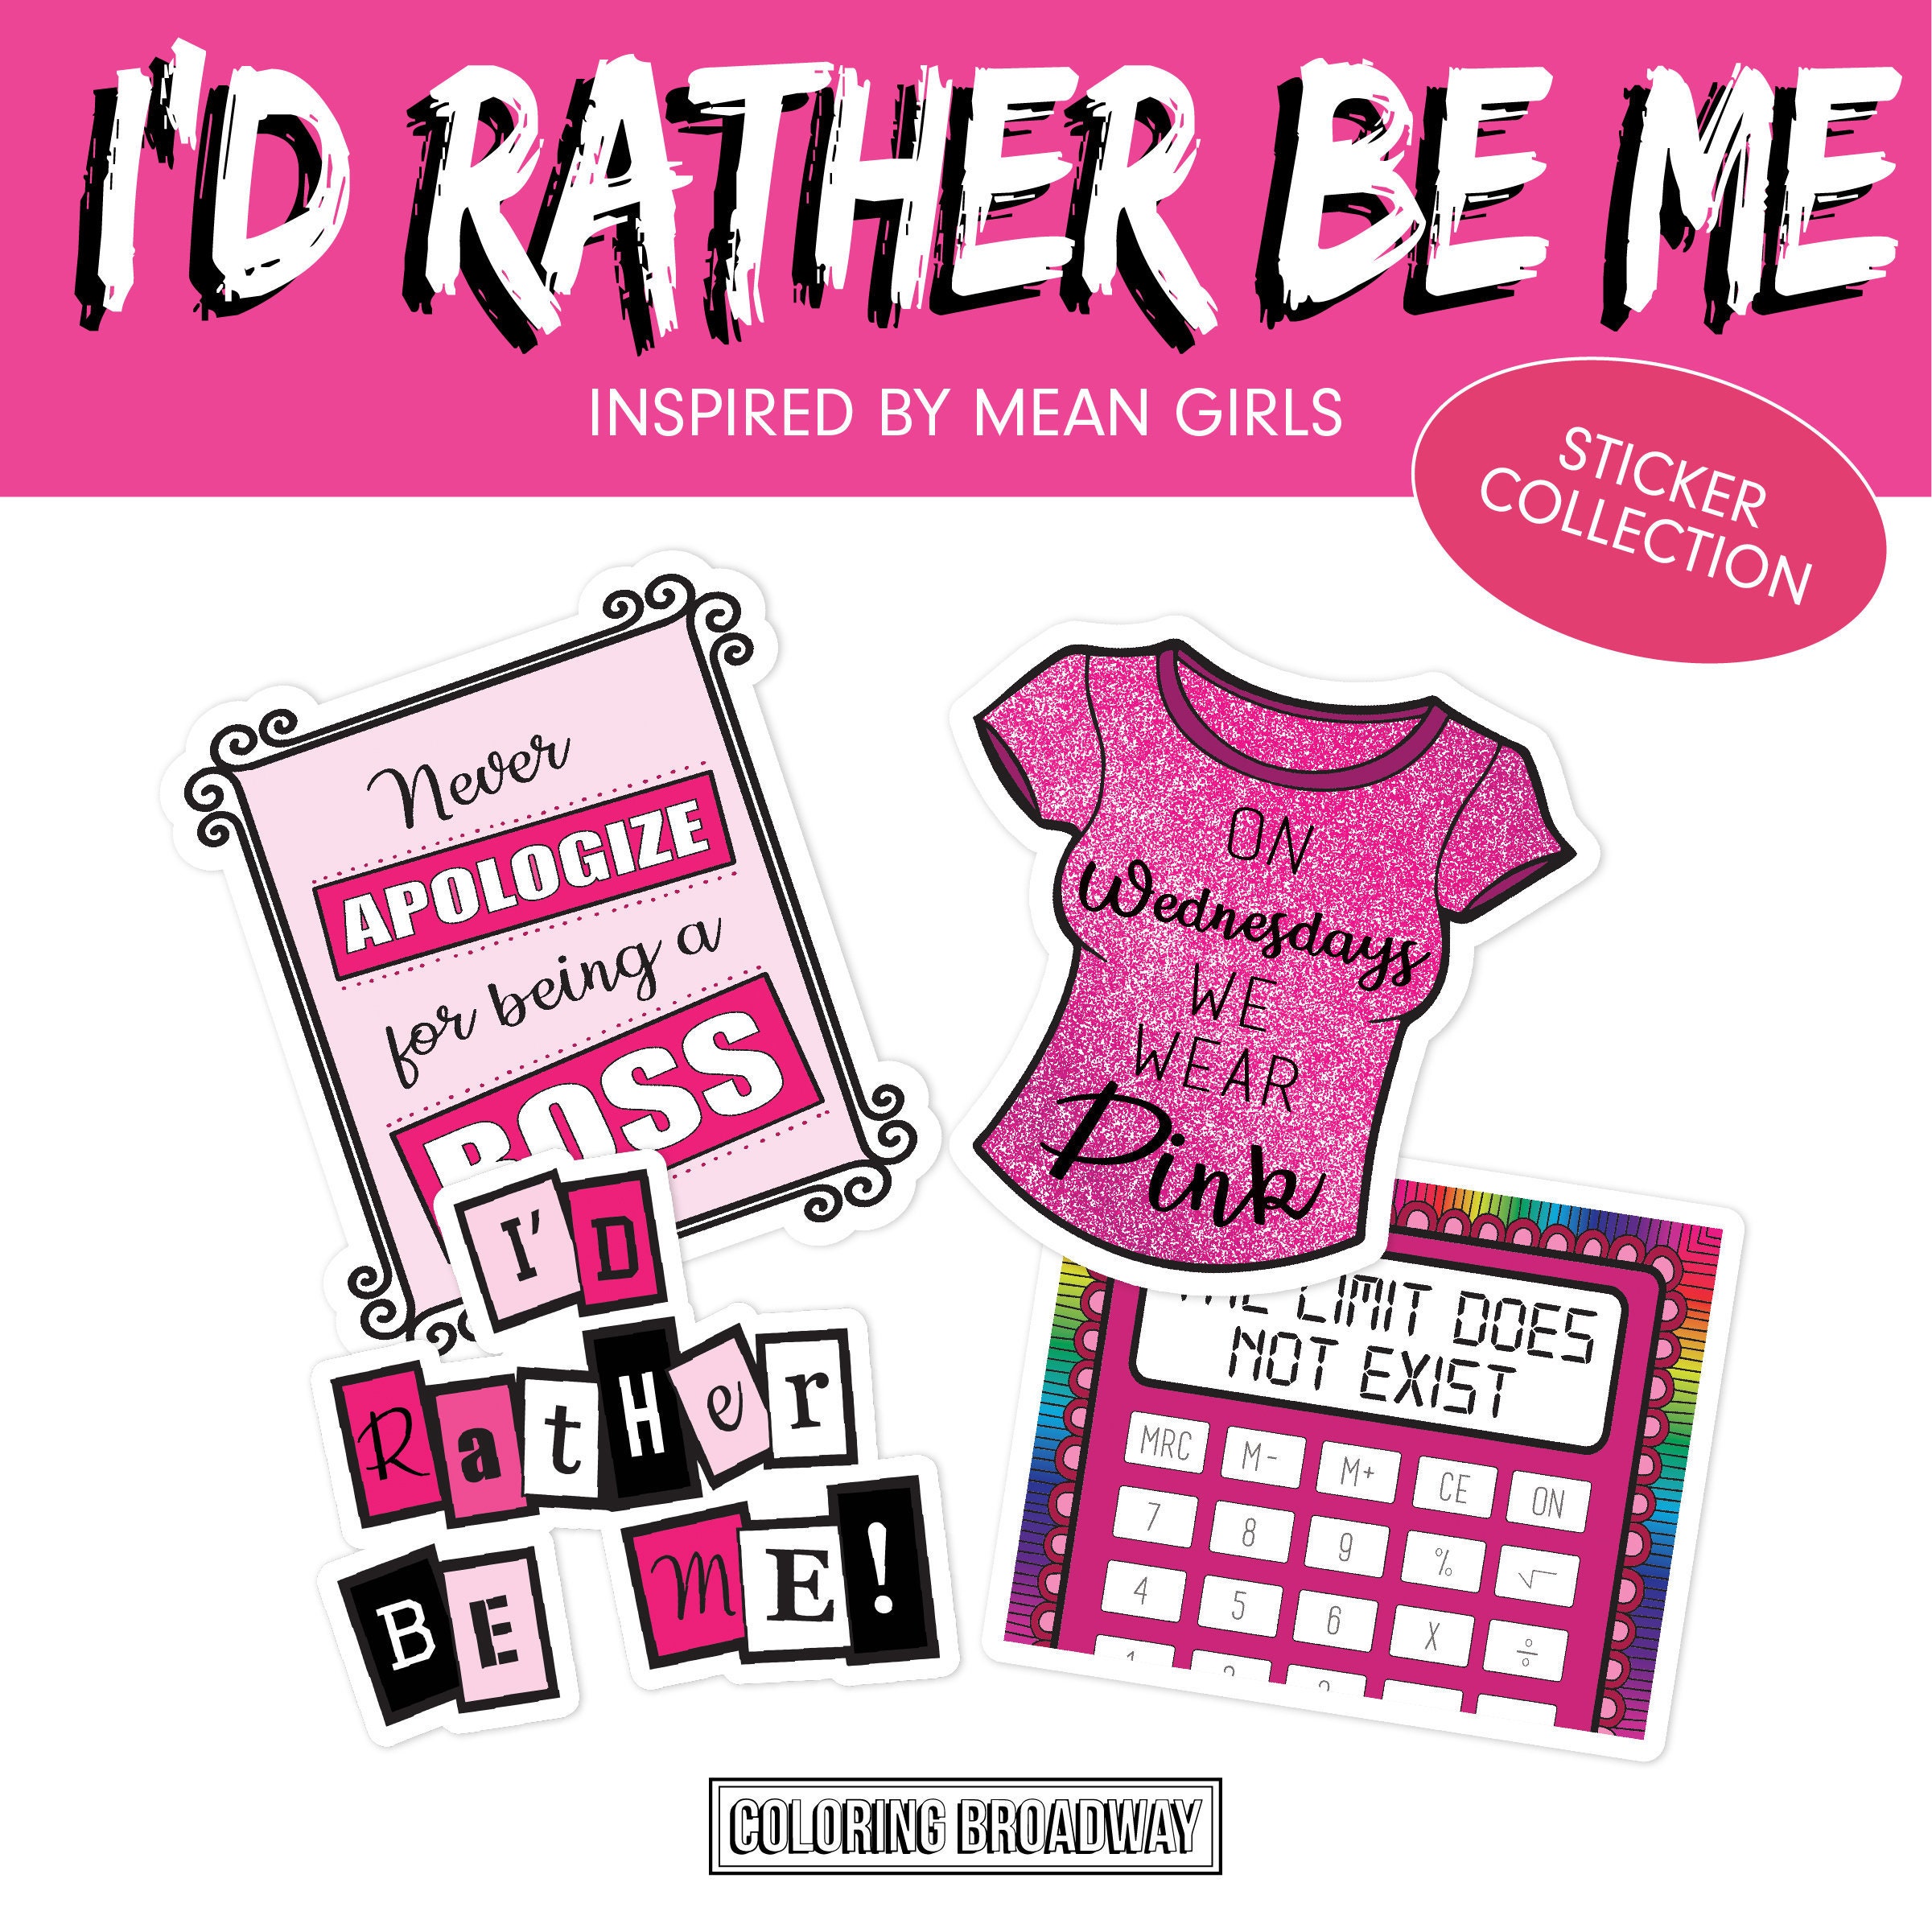 Mean Girls Sticker Set | Burn Book Sticker | On Wednesdays We Wear Pink  Sticker | That’s So Fetch Sticker | I’d rather be me sticker